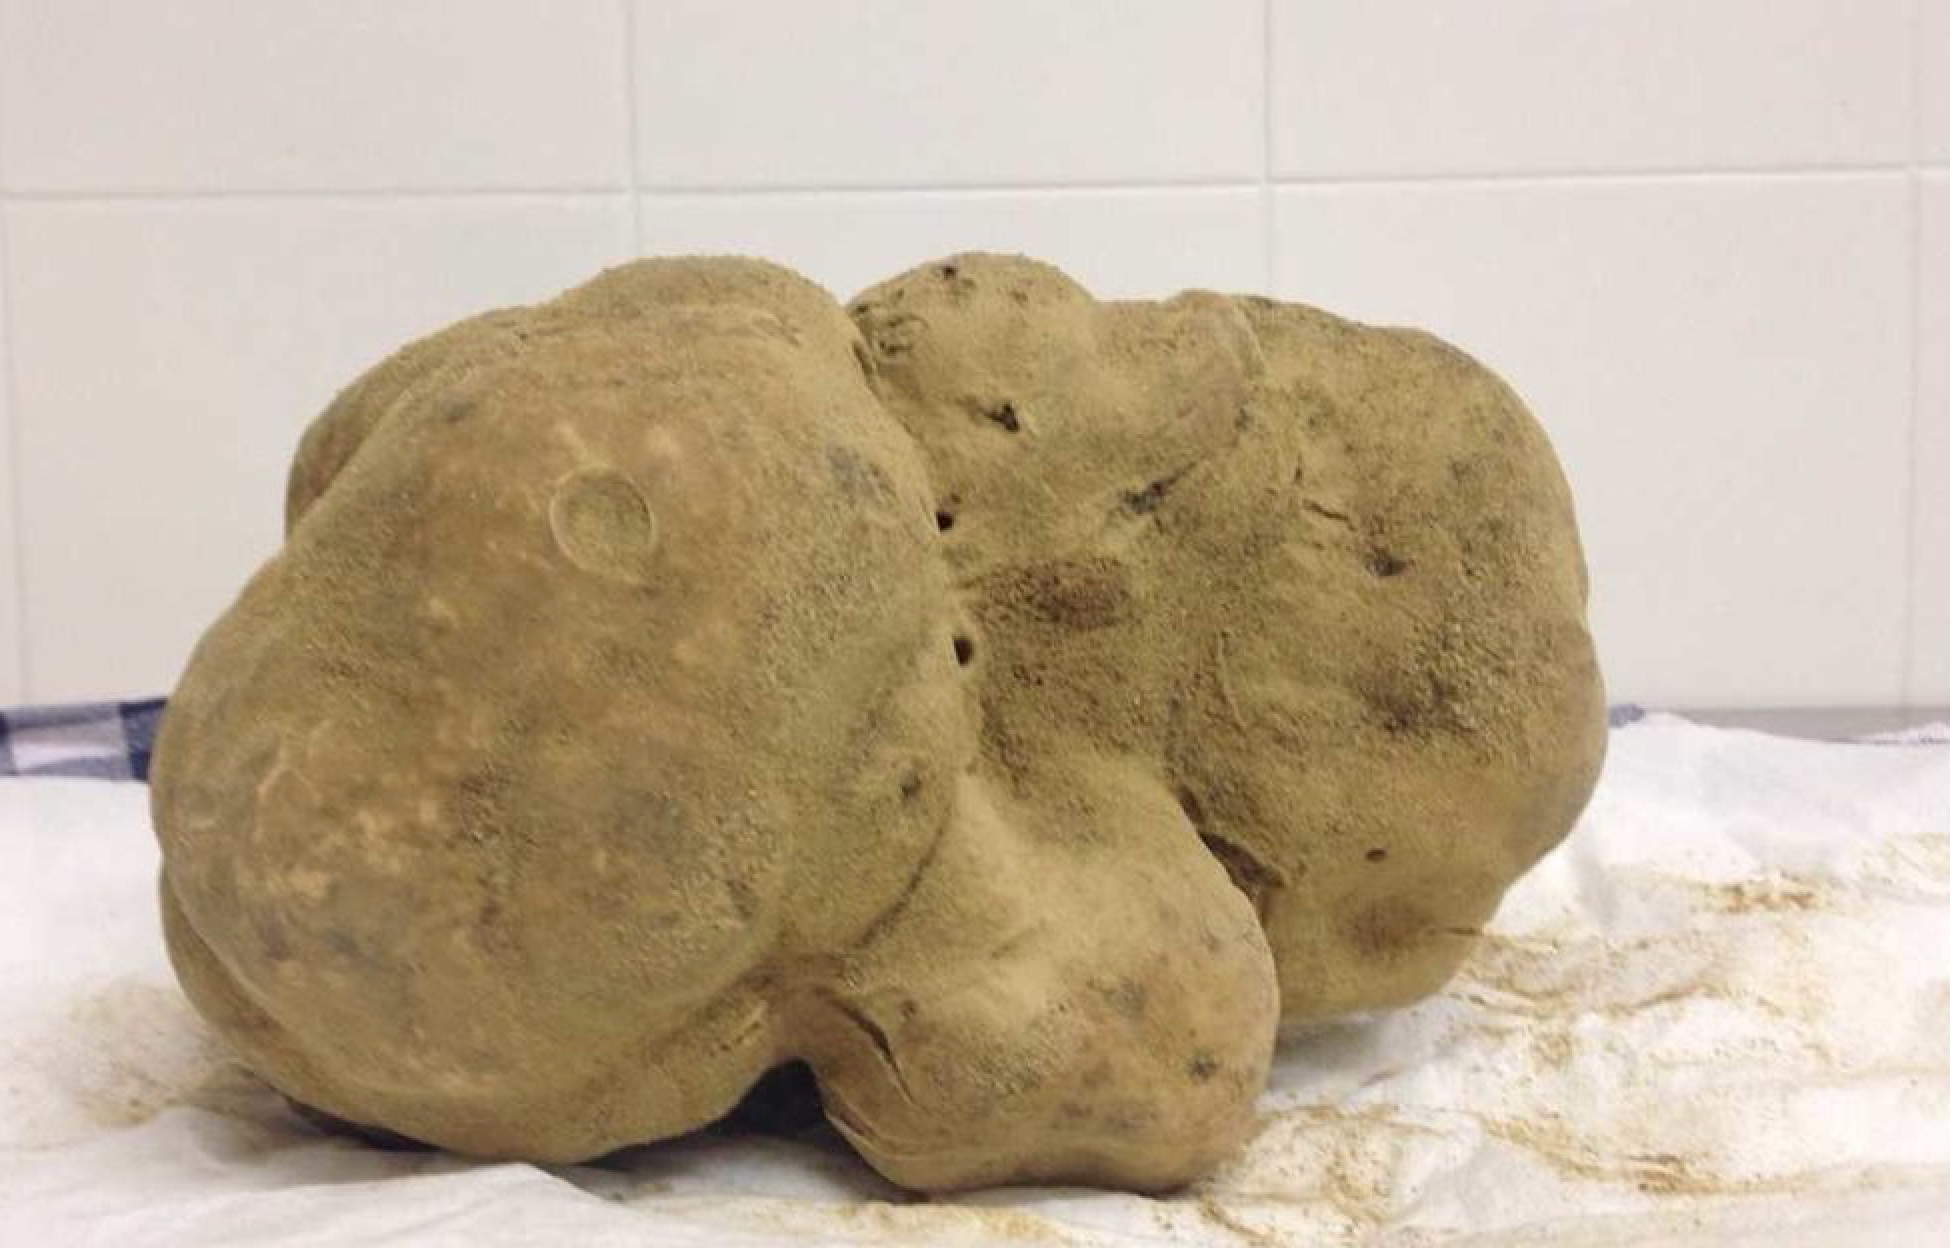 Worlds largest truffle